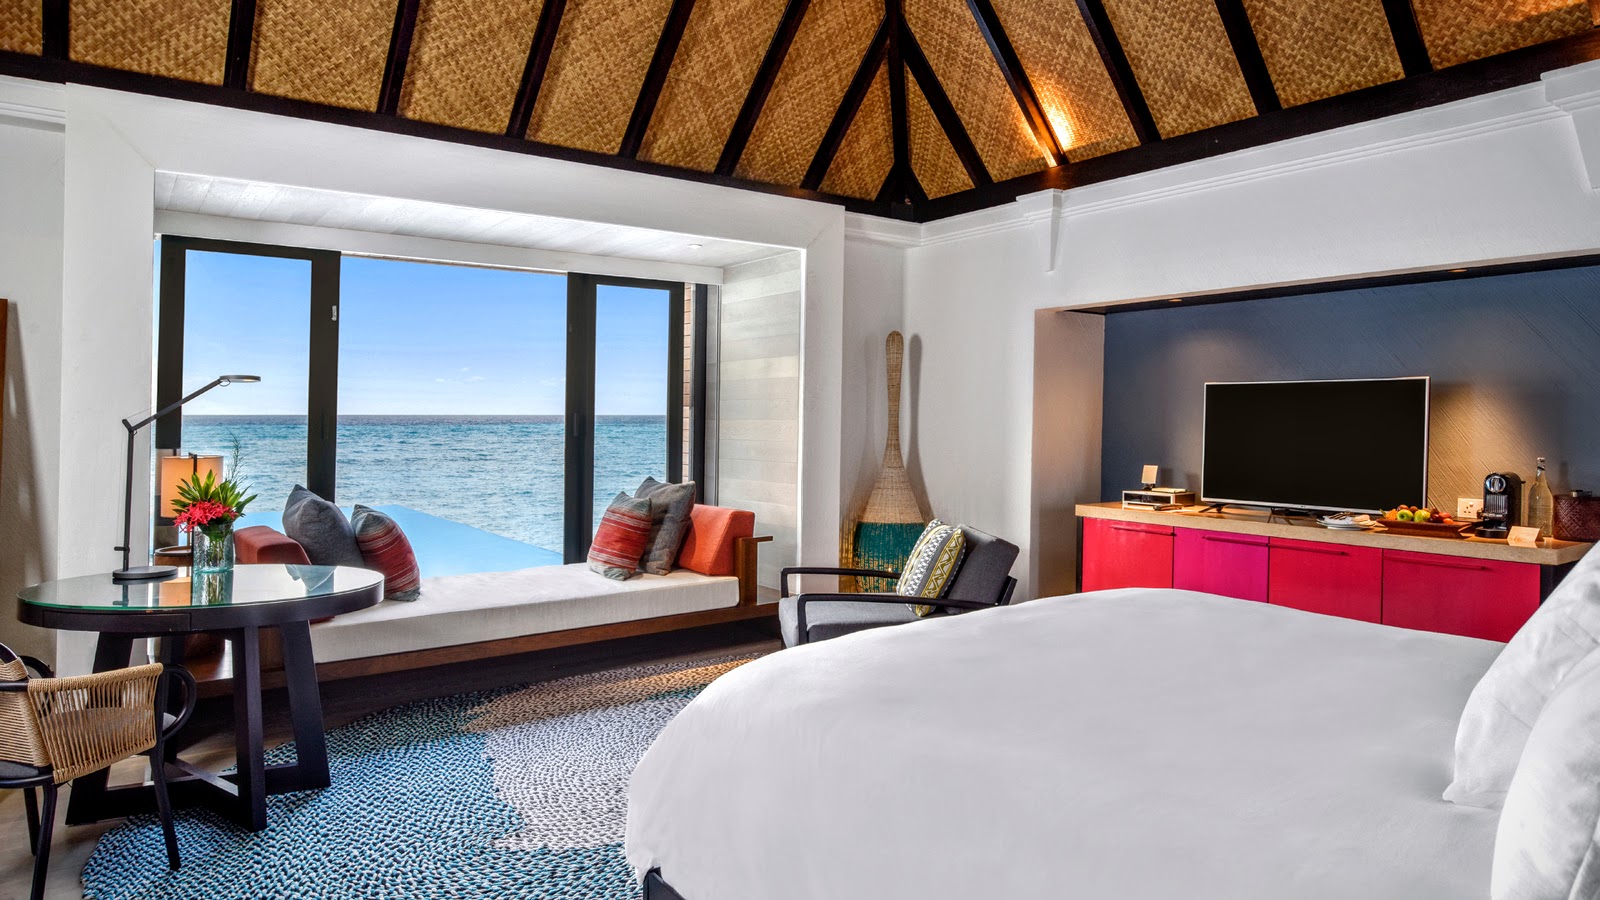 New Water Villas, Four Seasons Resort Maldives at Kuda Huraa